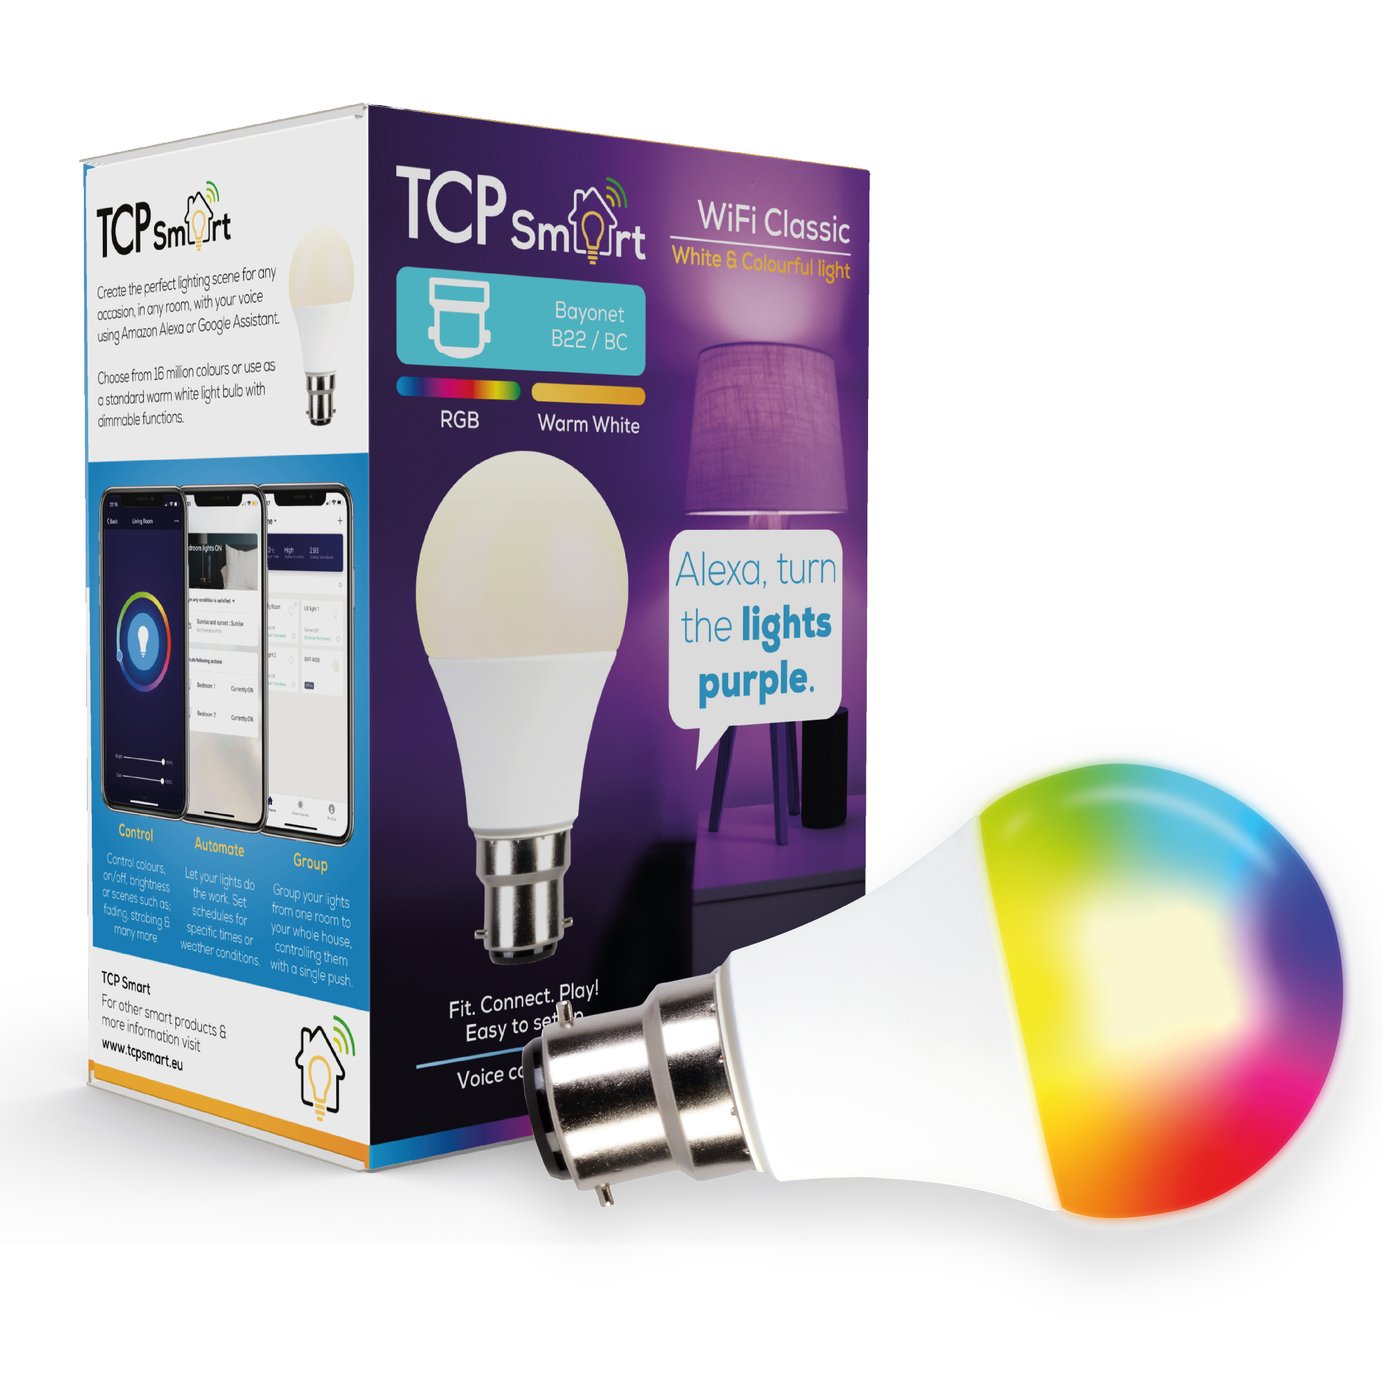 TCP Smart Wi-Fi Multicolour B22 LED Bulb Review